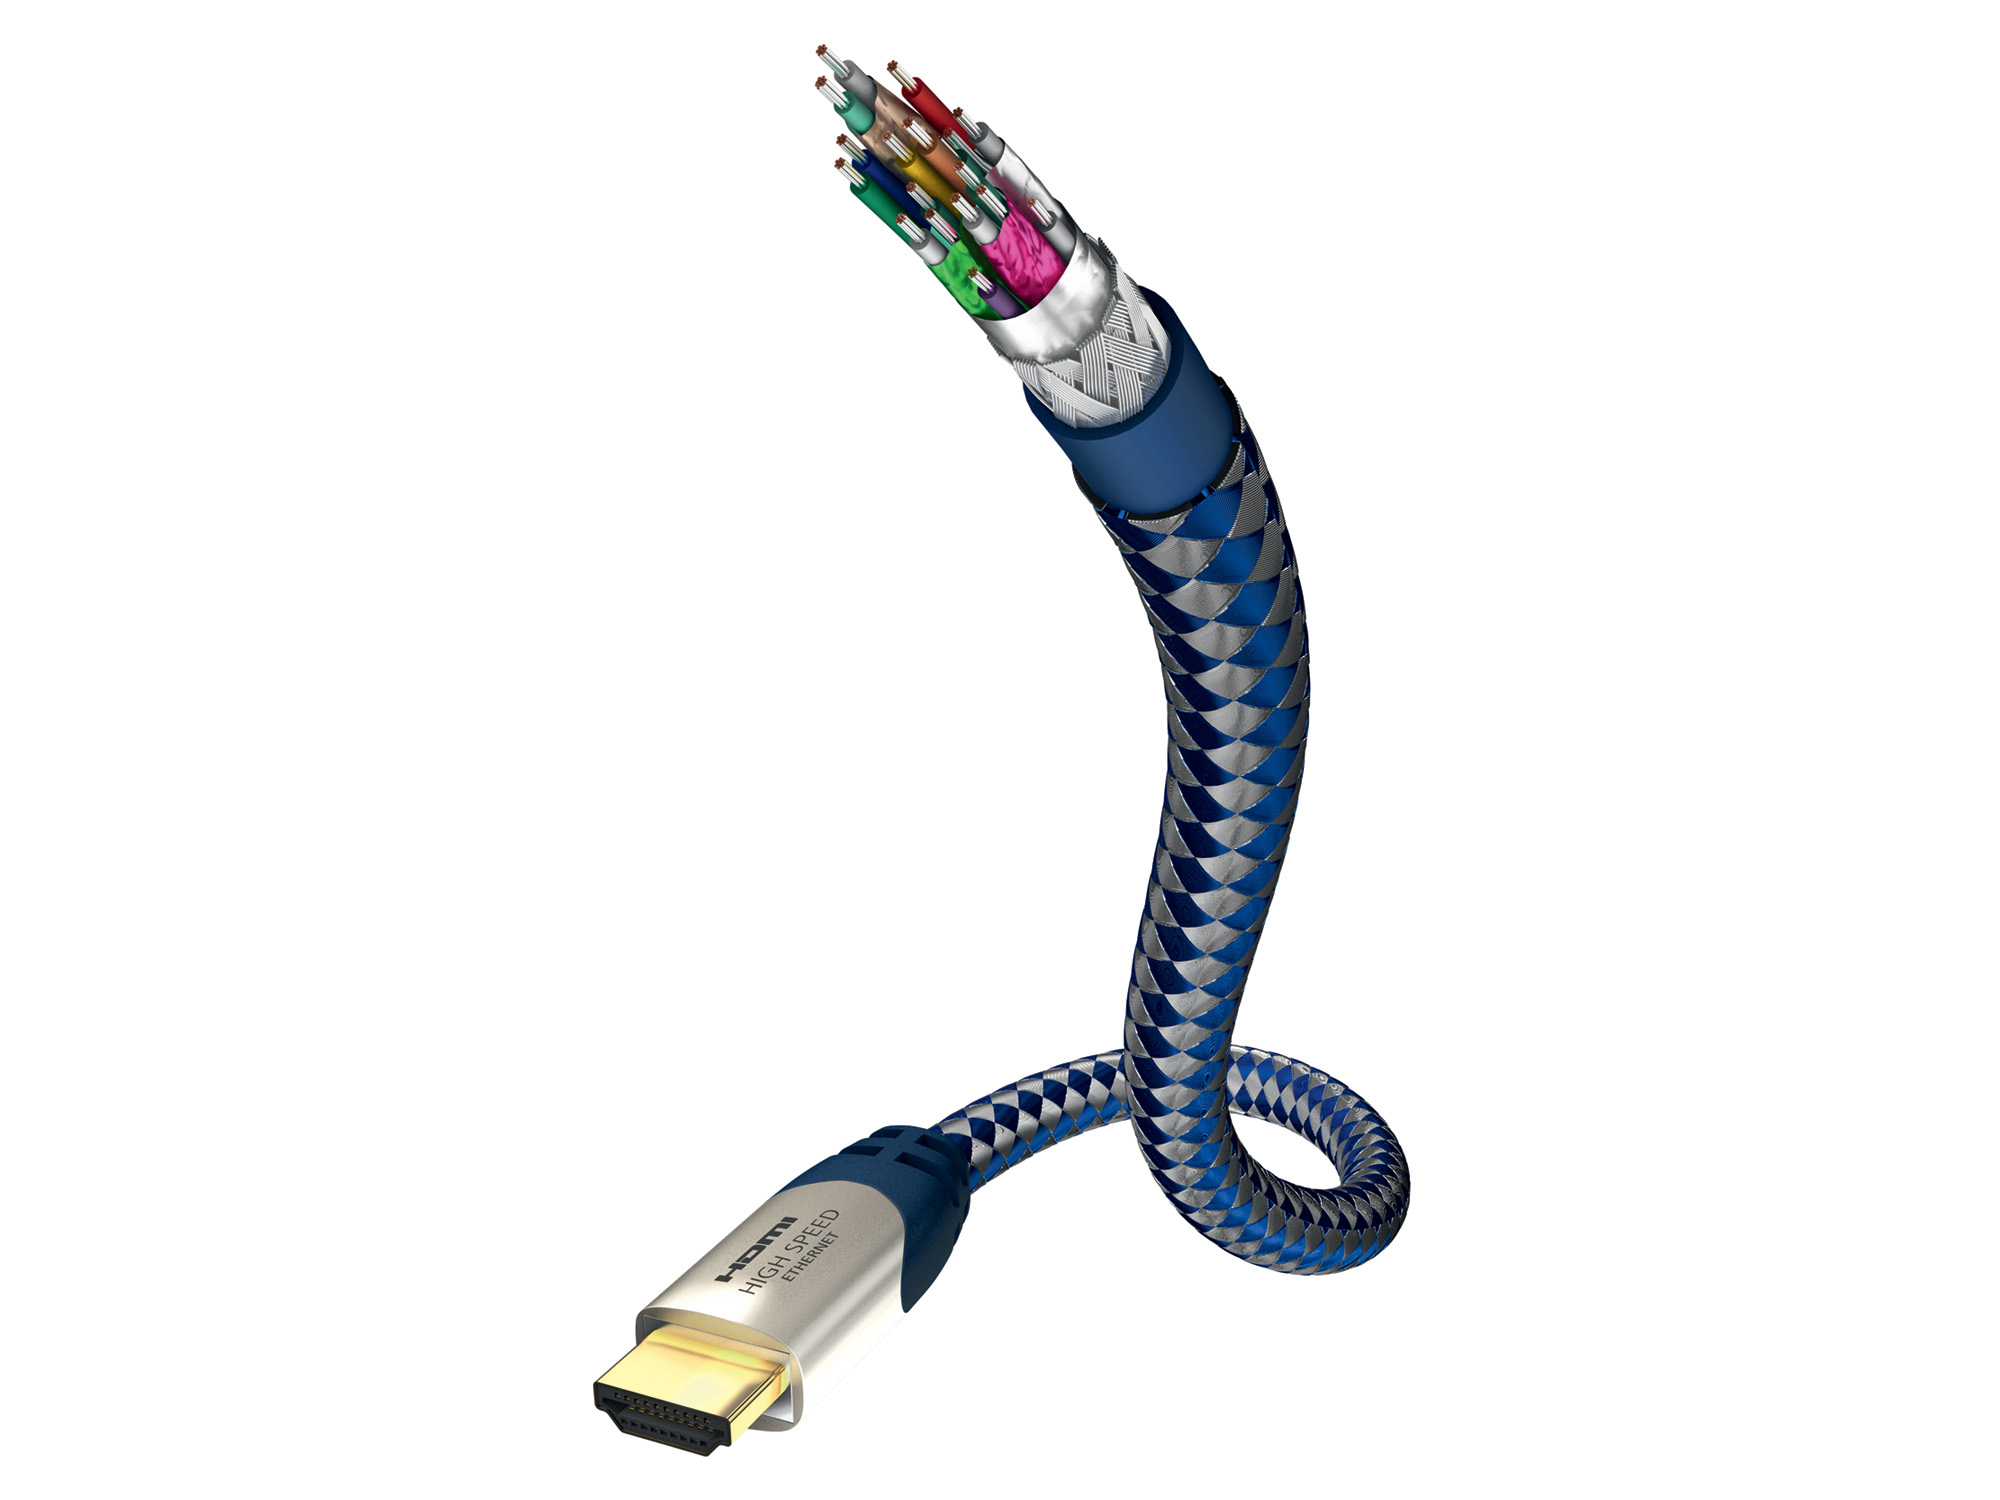 Inakustik Premium High Speed HDMI Kabel mit Ethernet